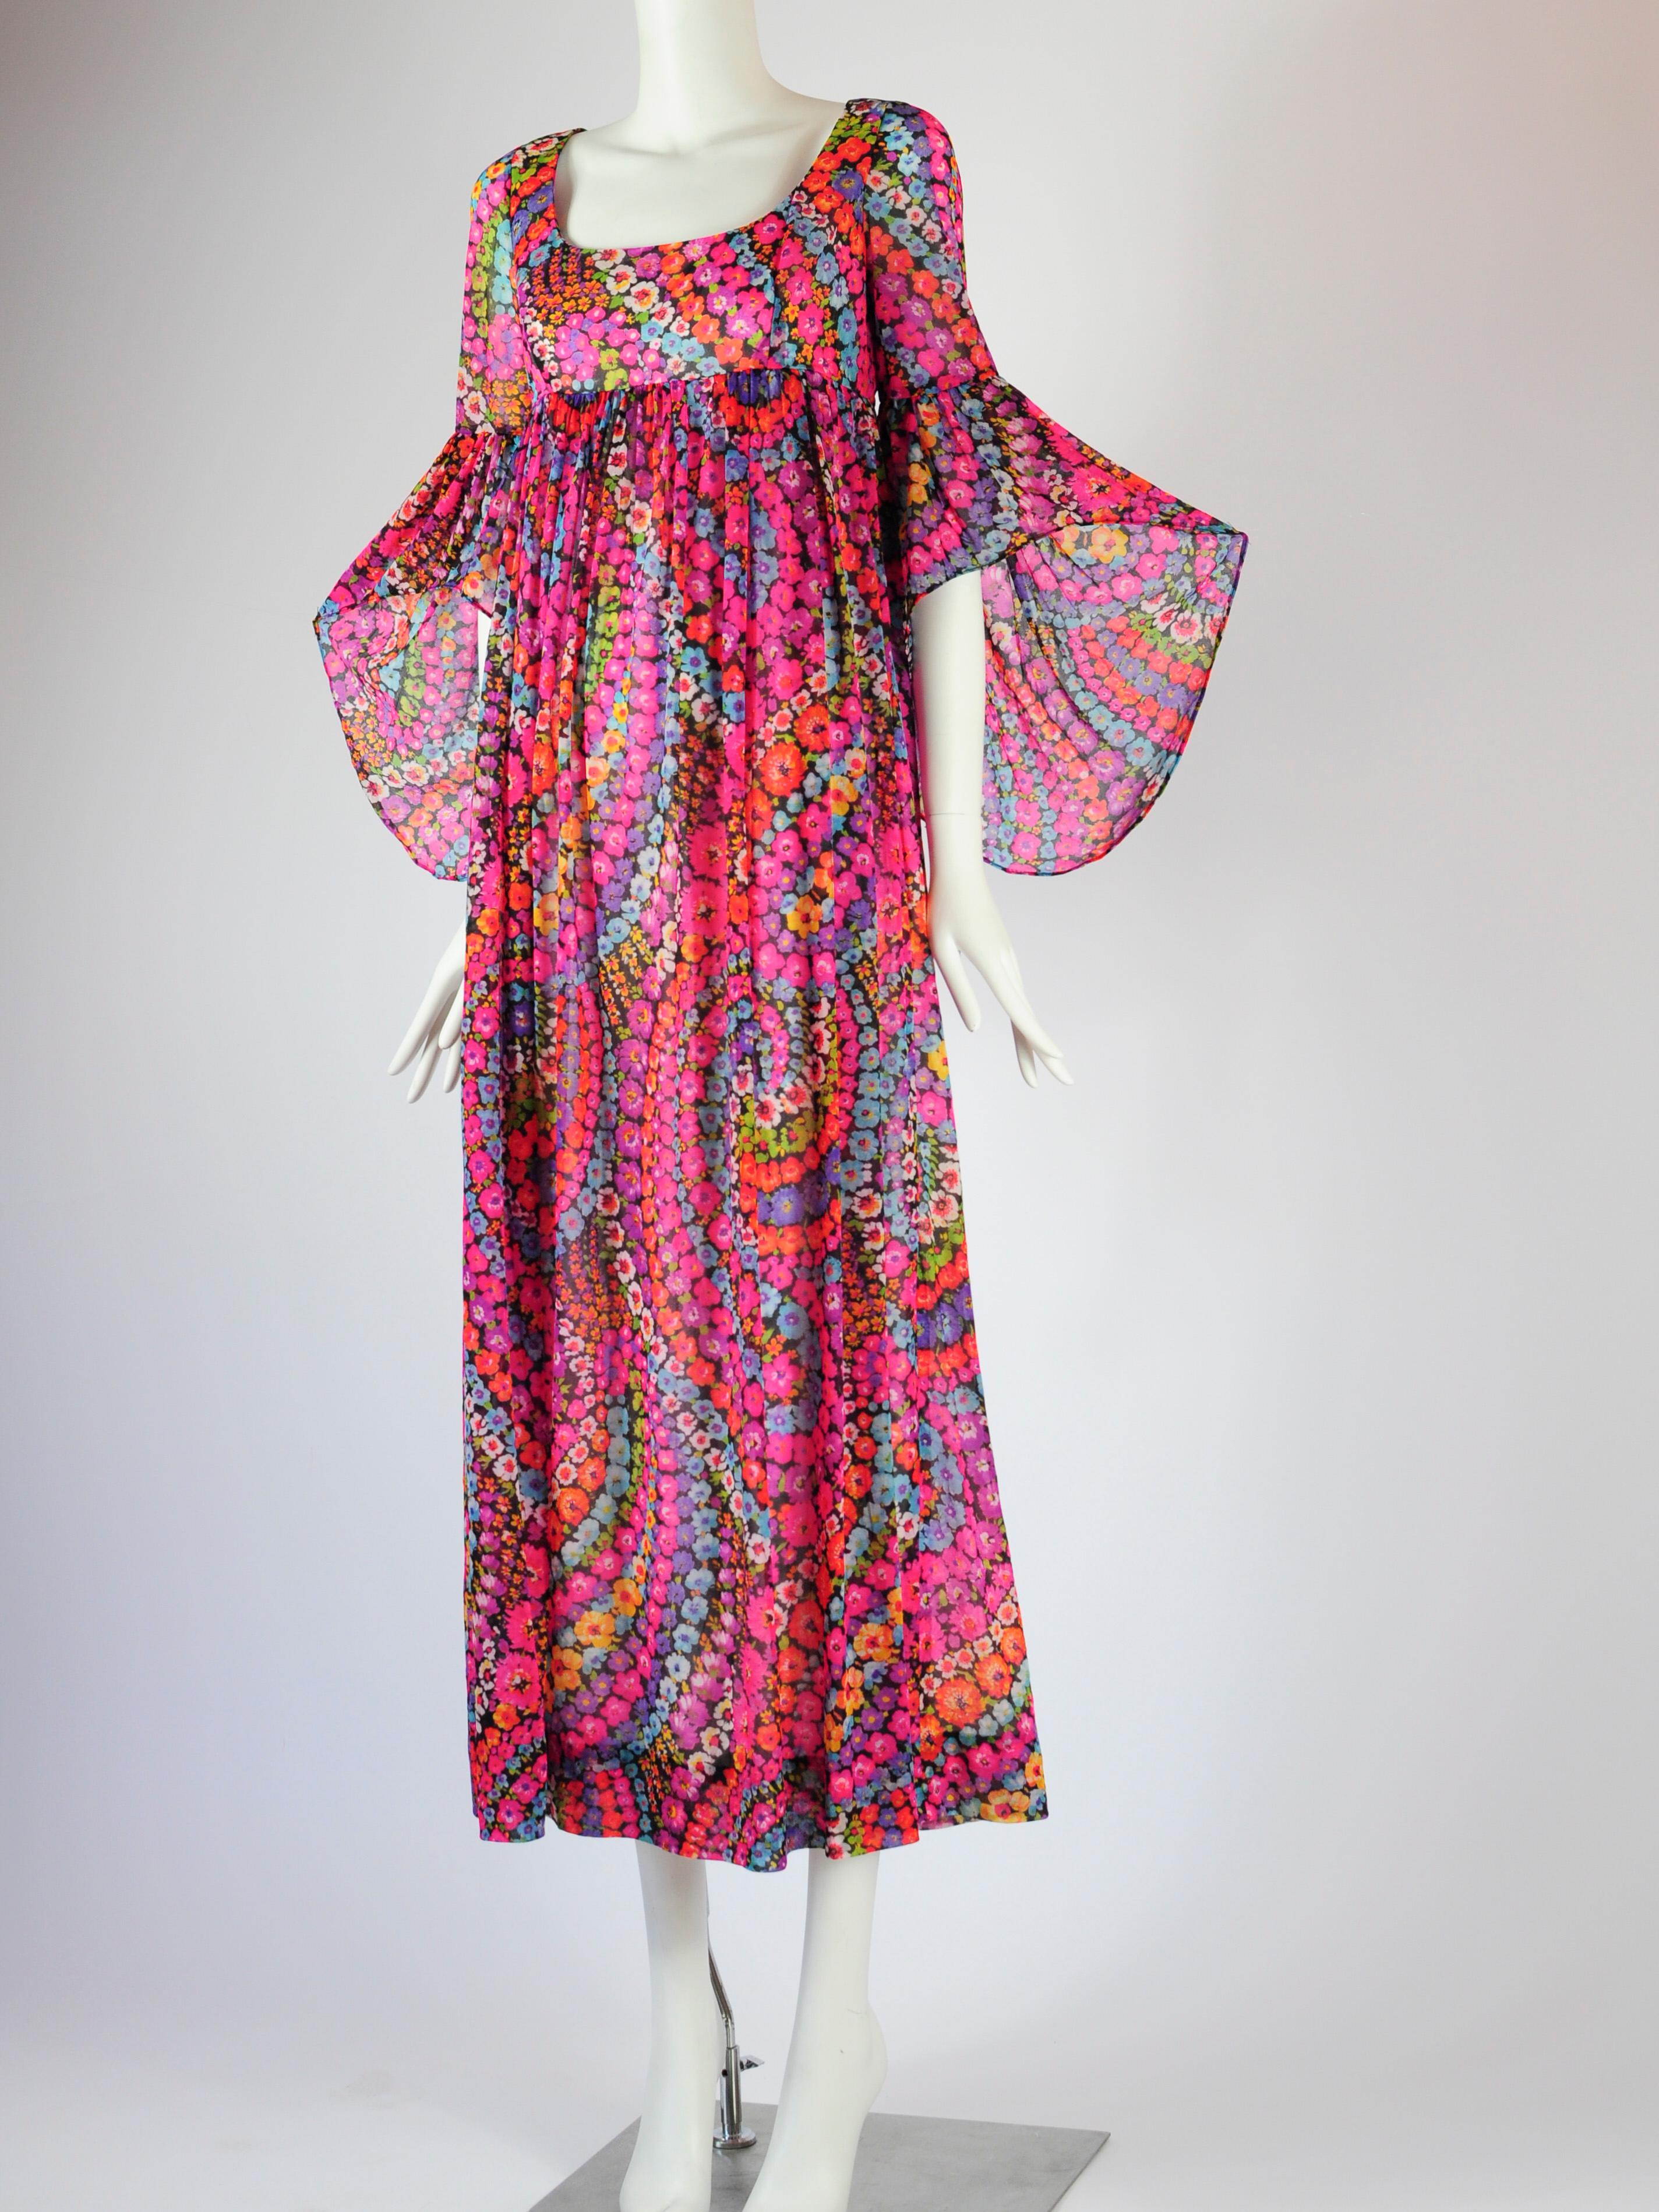 Robe longue à imprimé floral psychédélique de Quad London datant des années 1970. La robe a une taille empire avec une jupe fluide, et de belles manches papillon (aussi parfois étiquetées comme manches chauve-souris ou manches d'ange). L'imprimé